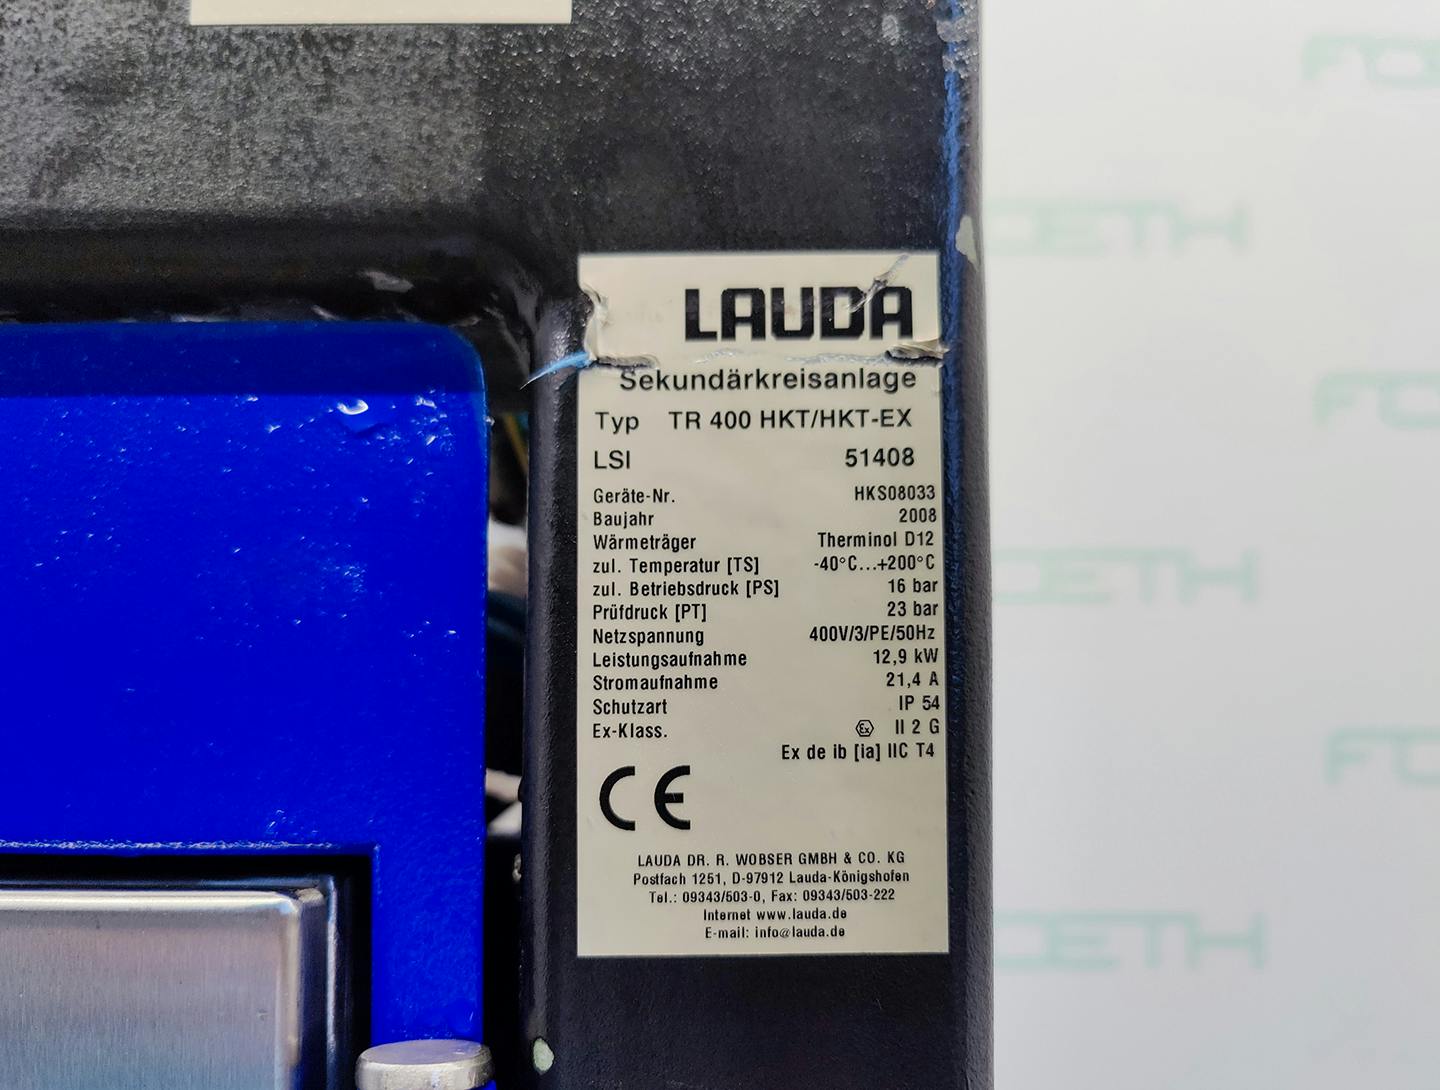 Lauda TR400 HKT/HKT-EX "secondary circuit system" - Temperiergerät - image 6